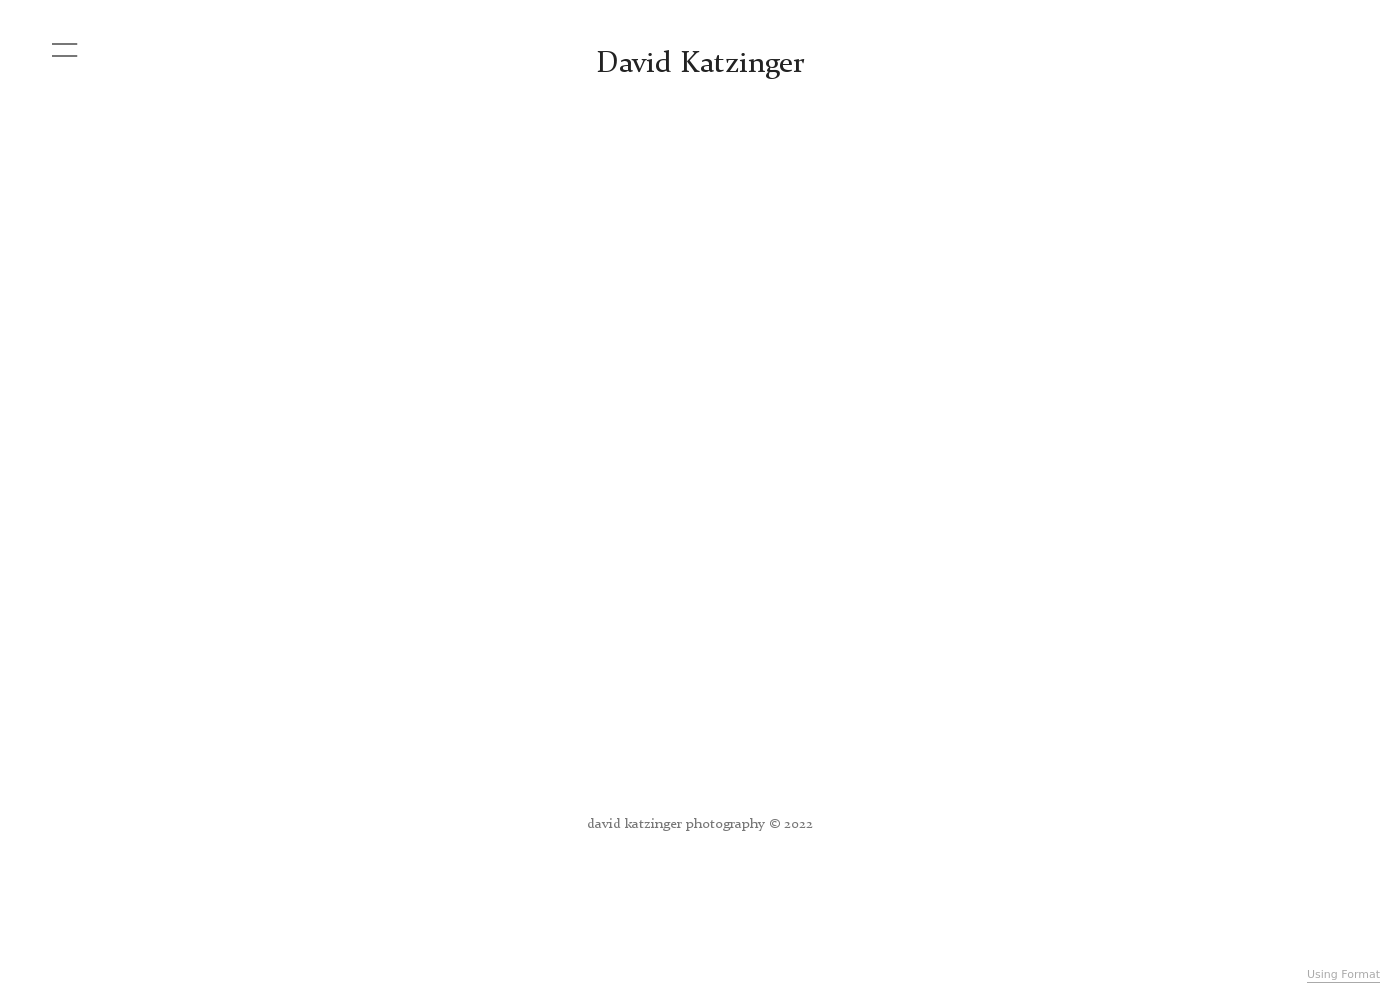 David Katzinger bureau